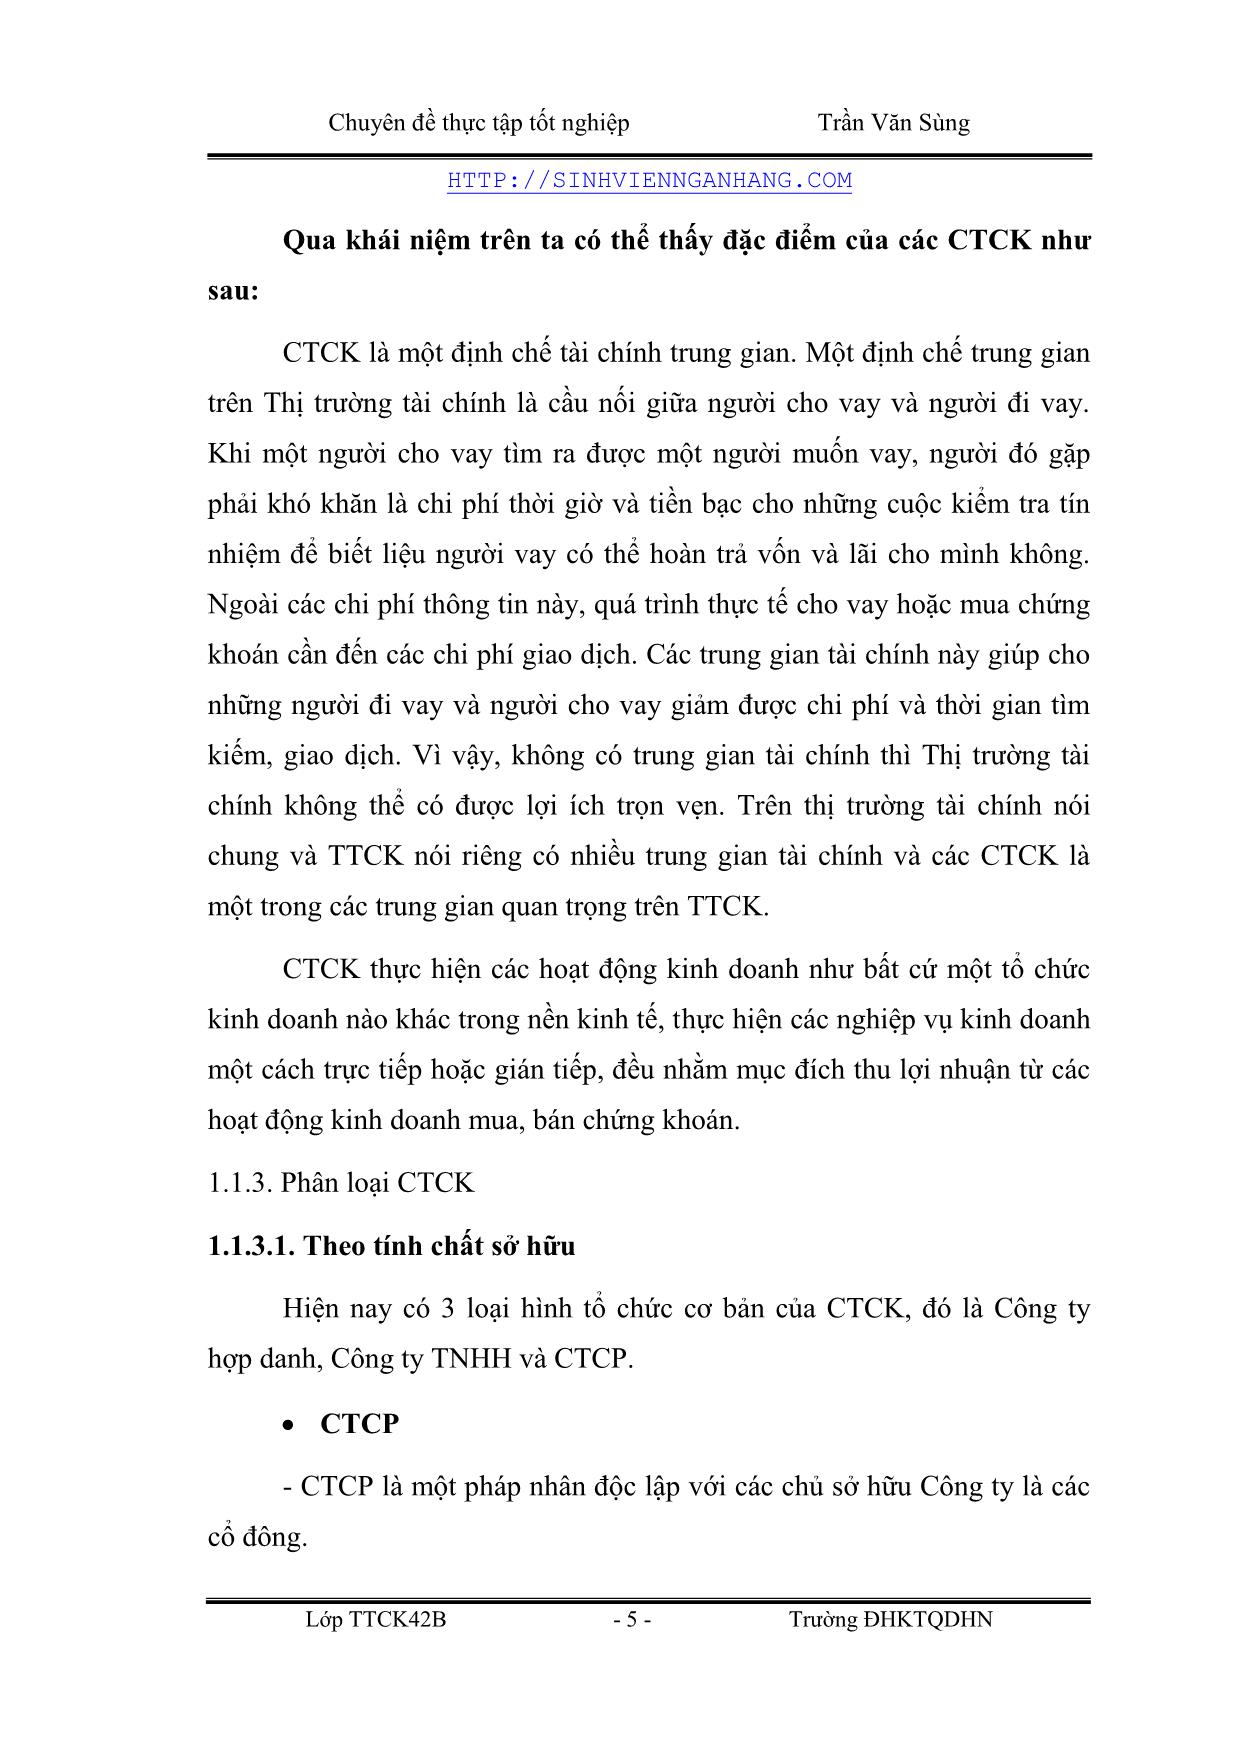 Chuyên đề Giải pháp phát triển các hoạt động kinh doanh chứng khoán của CTCP chứng khoán Bảo Việt trang 5